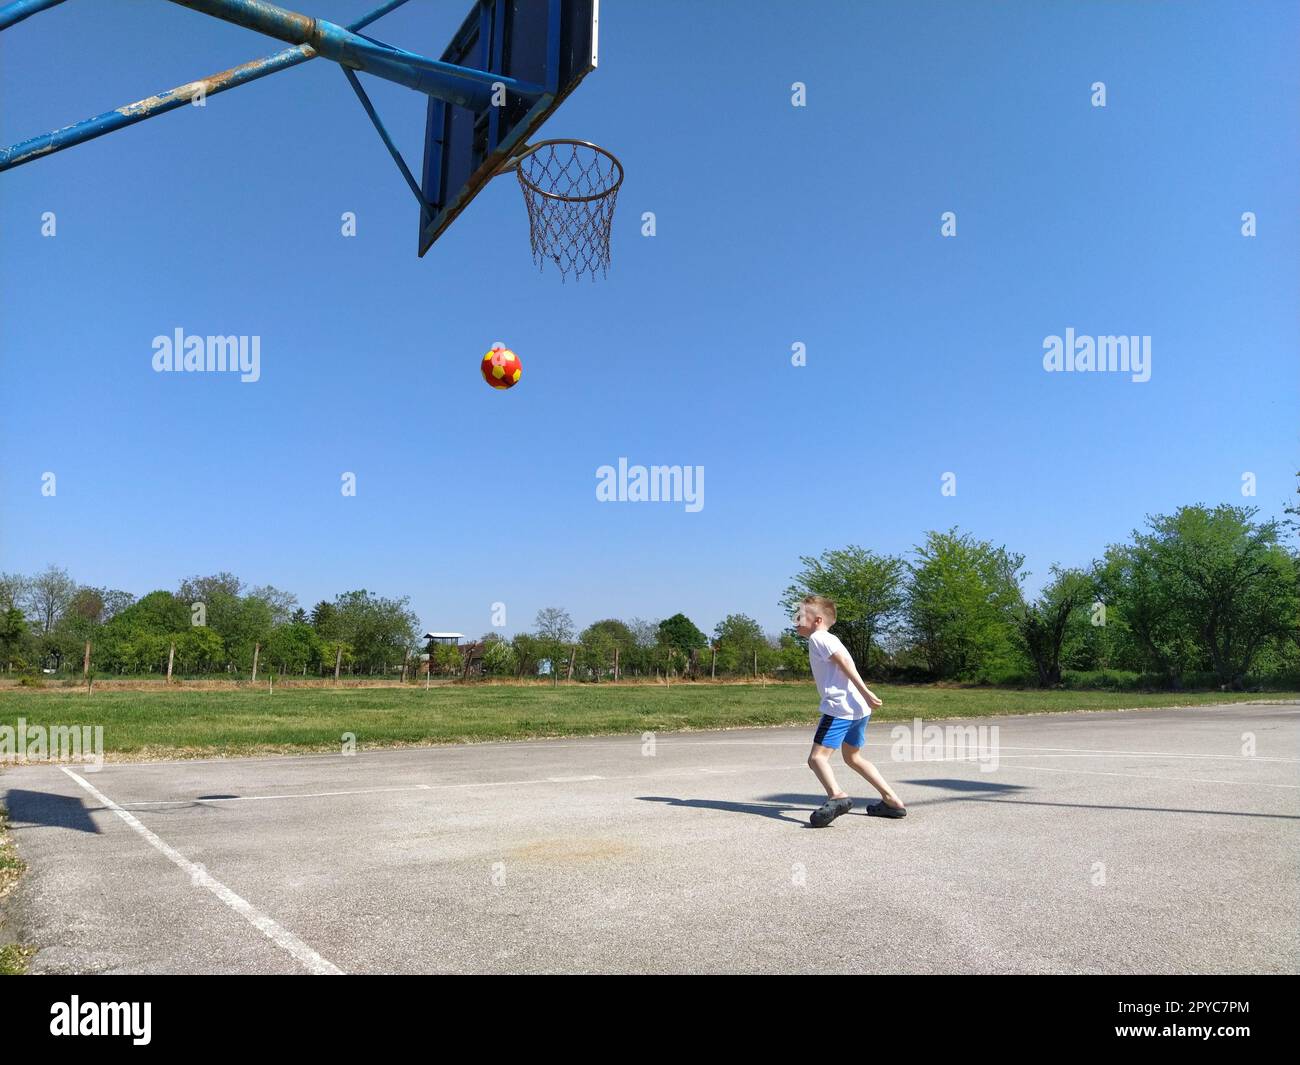 Sremska Mitrovica, Serbien. 6. Juni 2020. Ein Junge spielt Ball auf dem Spielplatz. Asphaltsportplatz. Ein Kind in einem weißen T-Shirt. Kleinkind mit blondem Haar, 7 Jahre alt. Laufen, Treten und Übungen Stockfoto